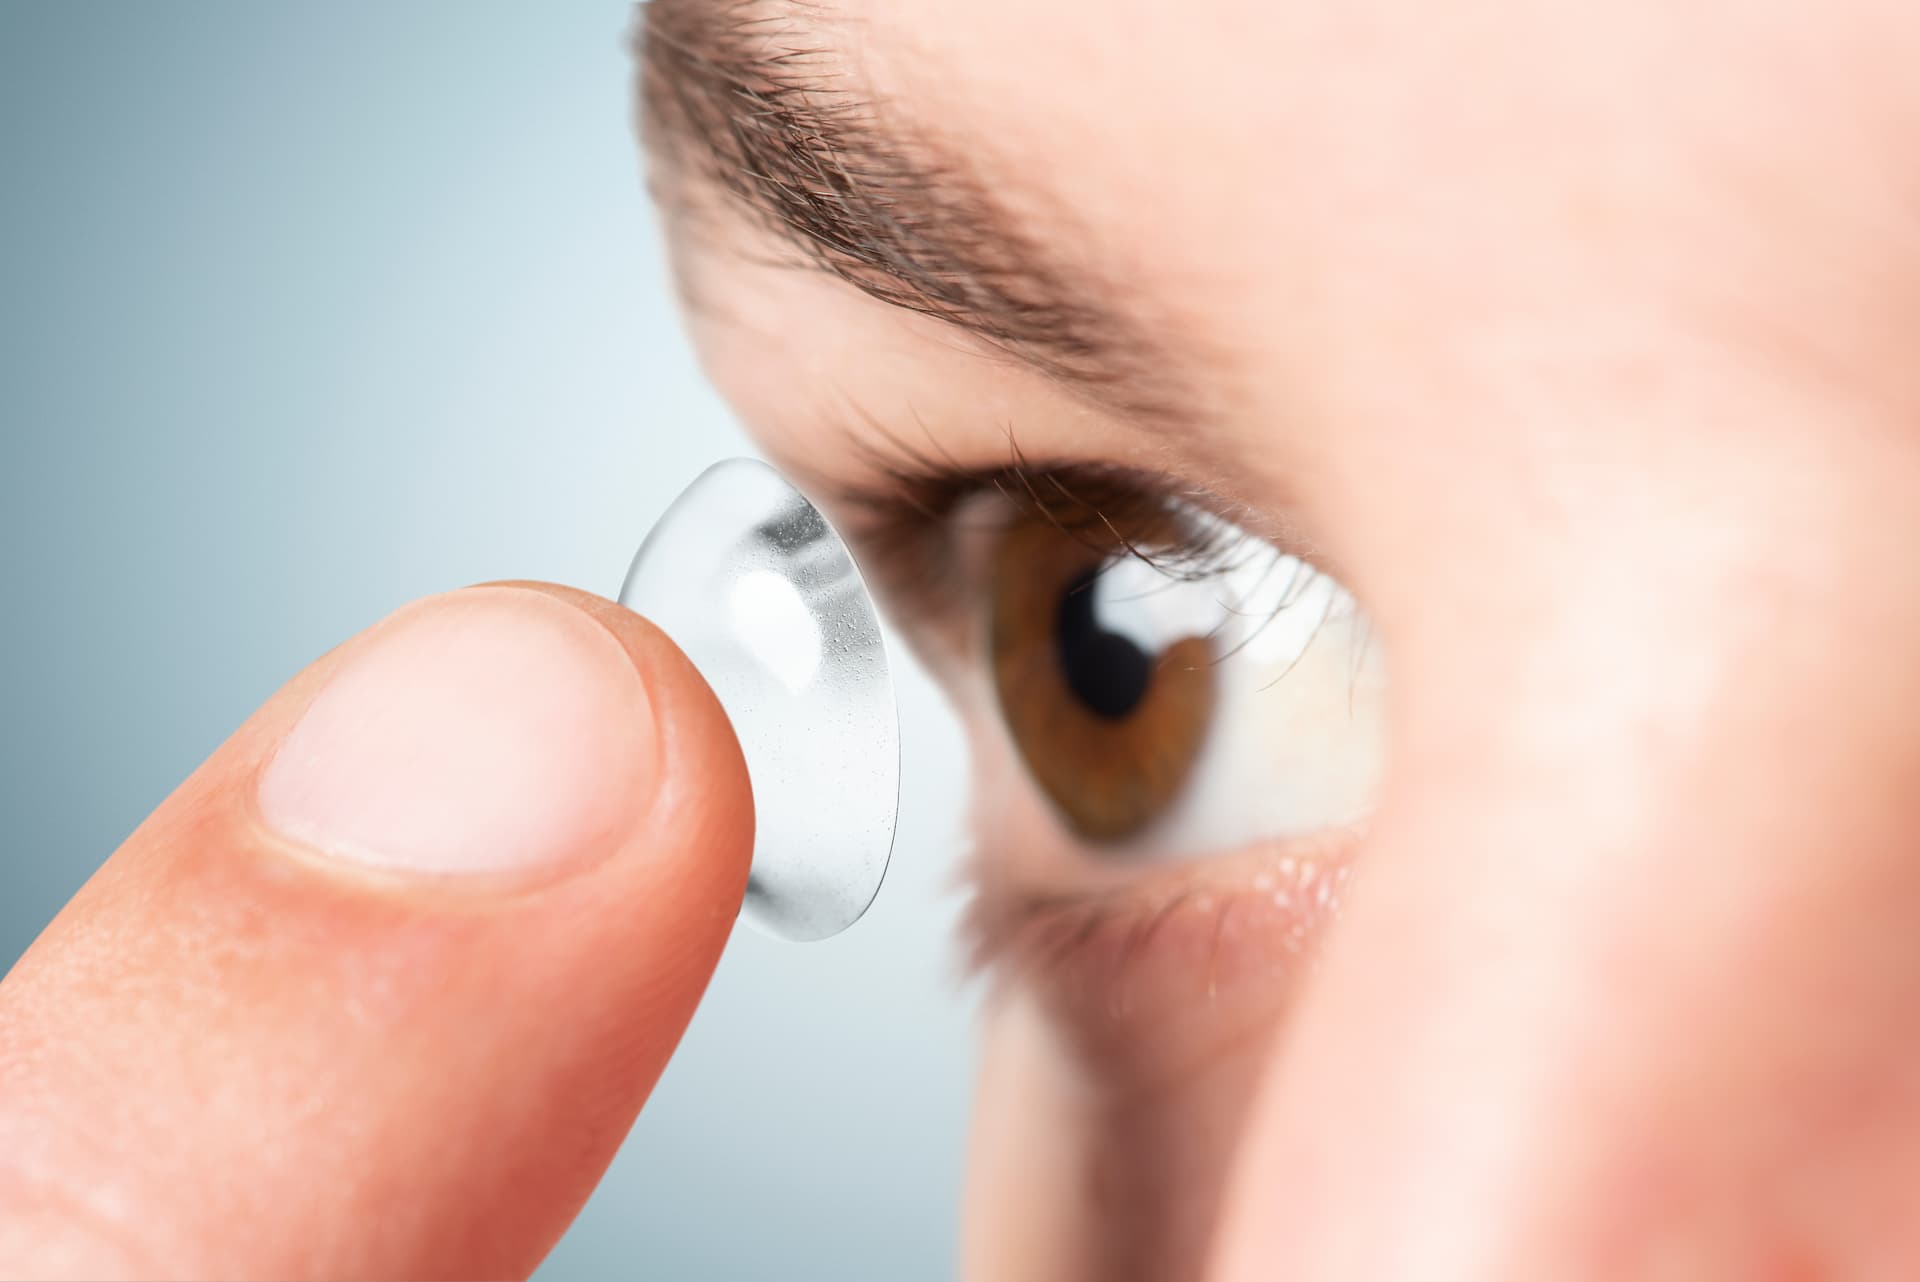 Optometristas garantem segurança das lentes de contato